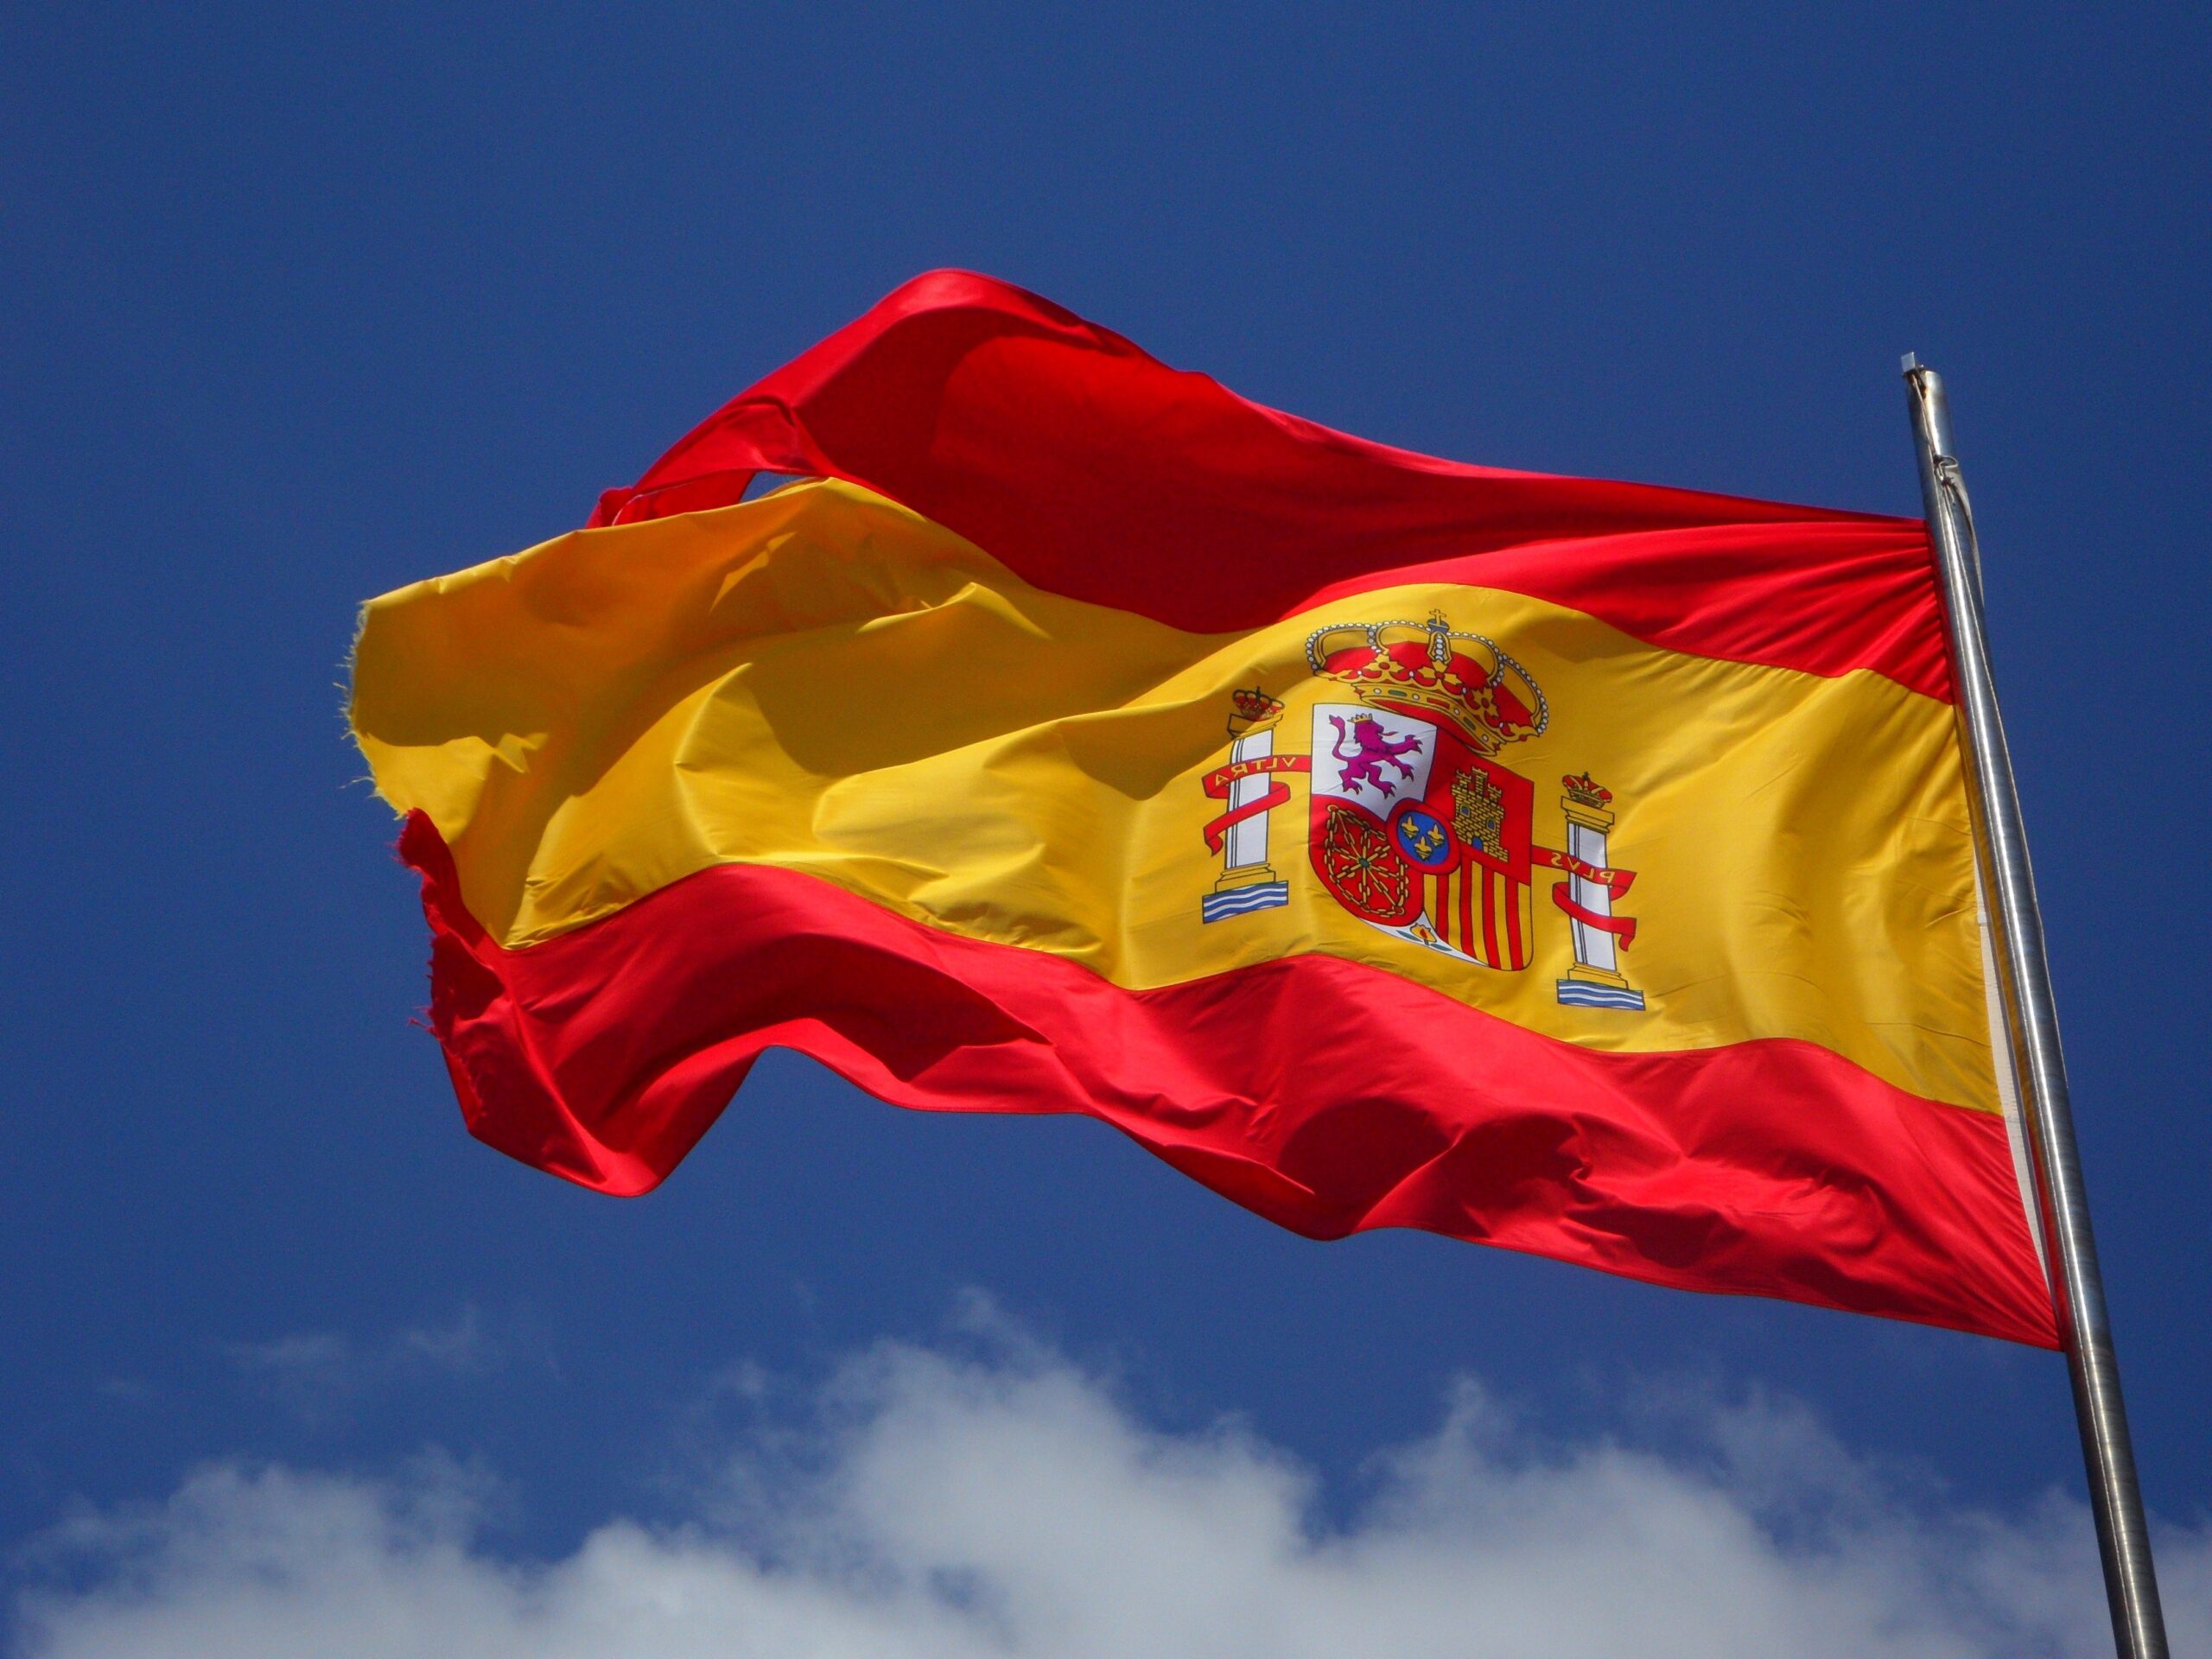 Ισπανία: Έρχονται τριπλές εκλογές το 2023 αλλά και ισπανική προεδρία της ΕΕ